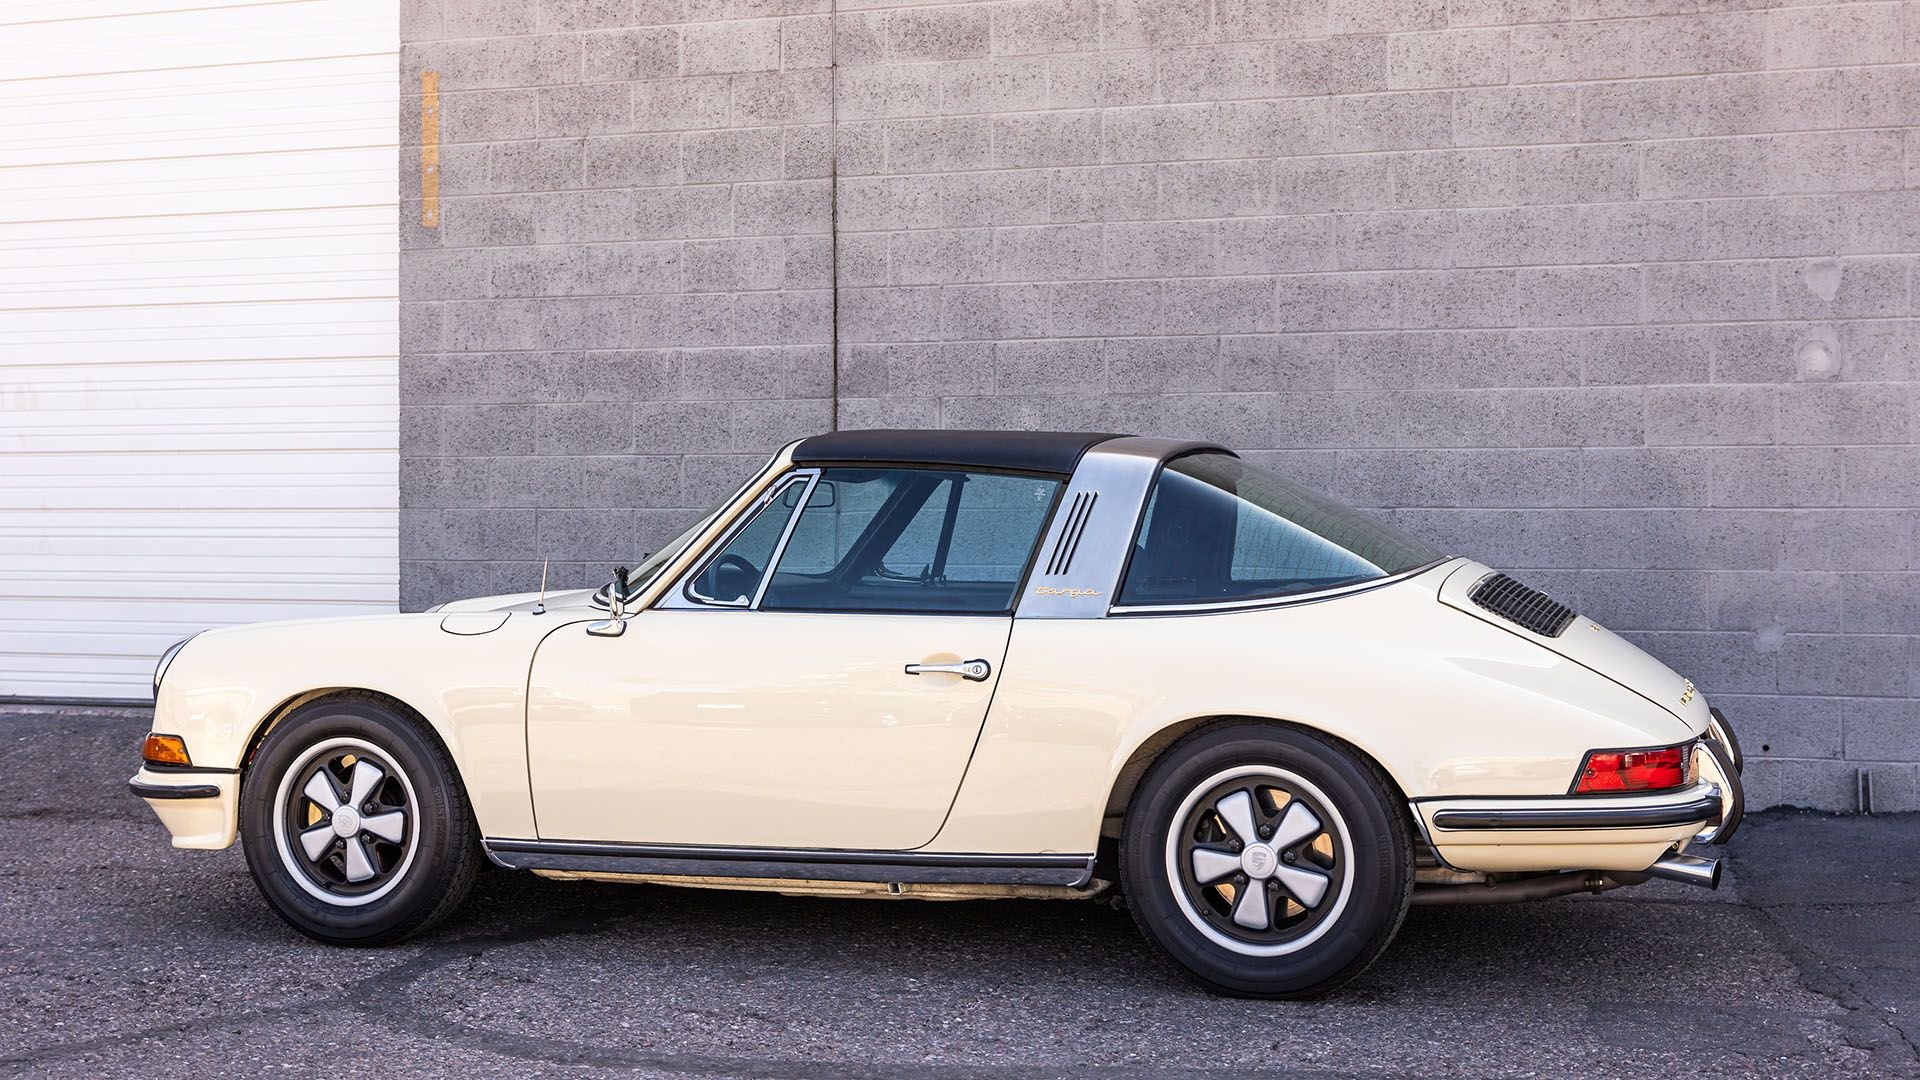 For Sale 1973 Porsche 911 S Targa